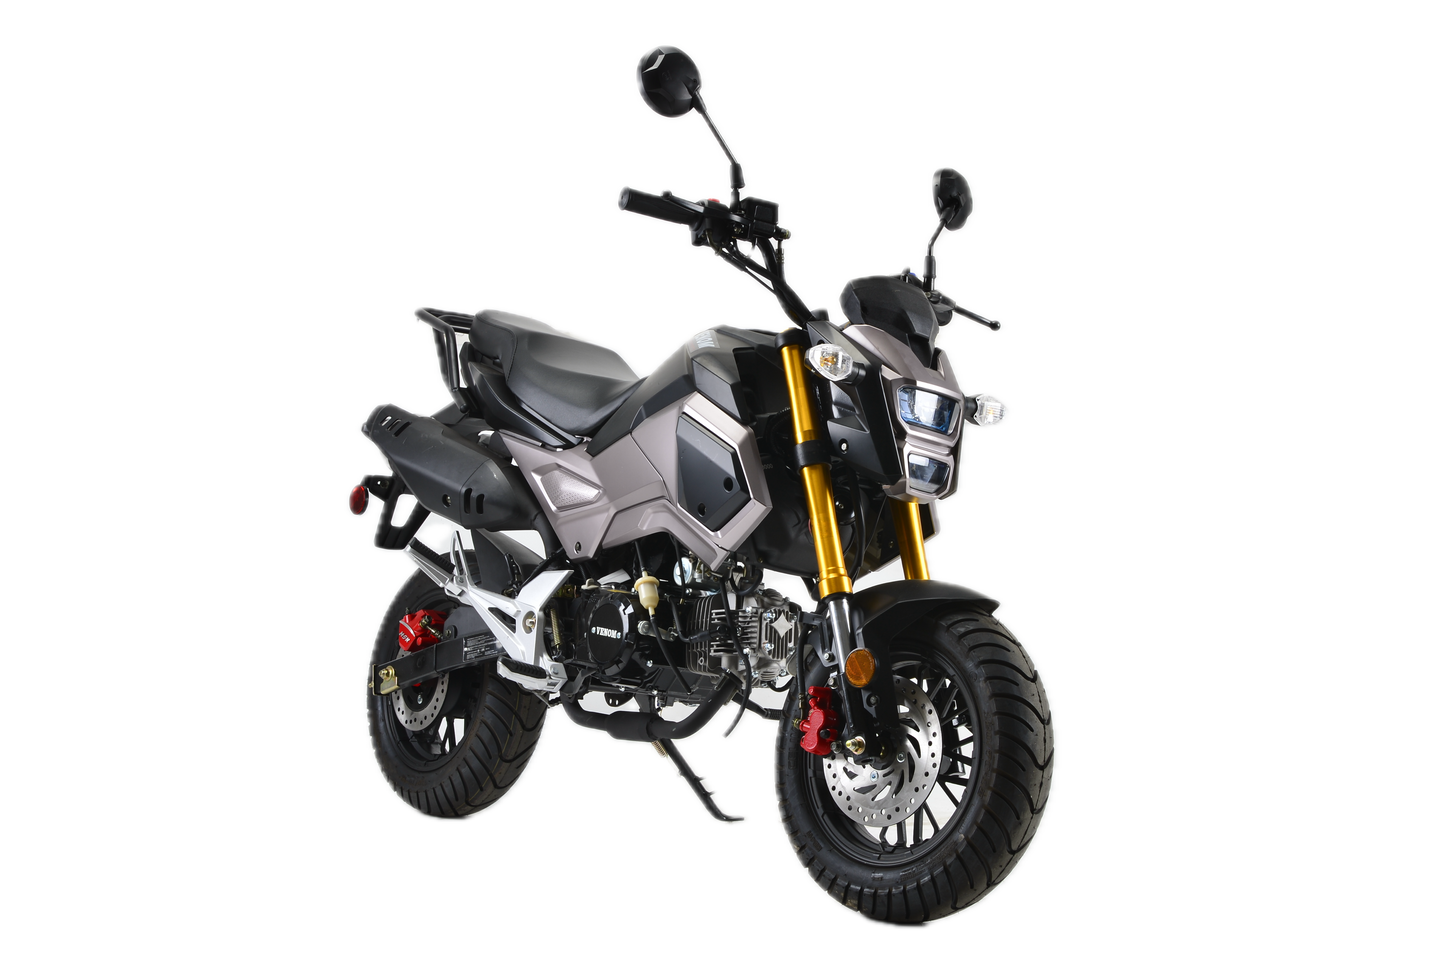 Baodiao BD125-10 motorcycle